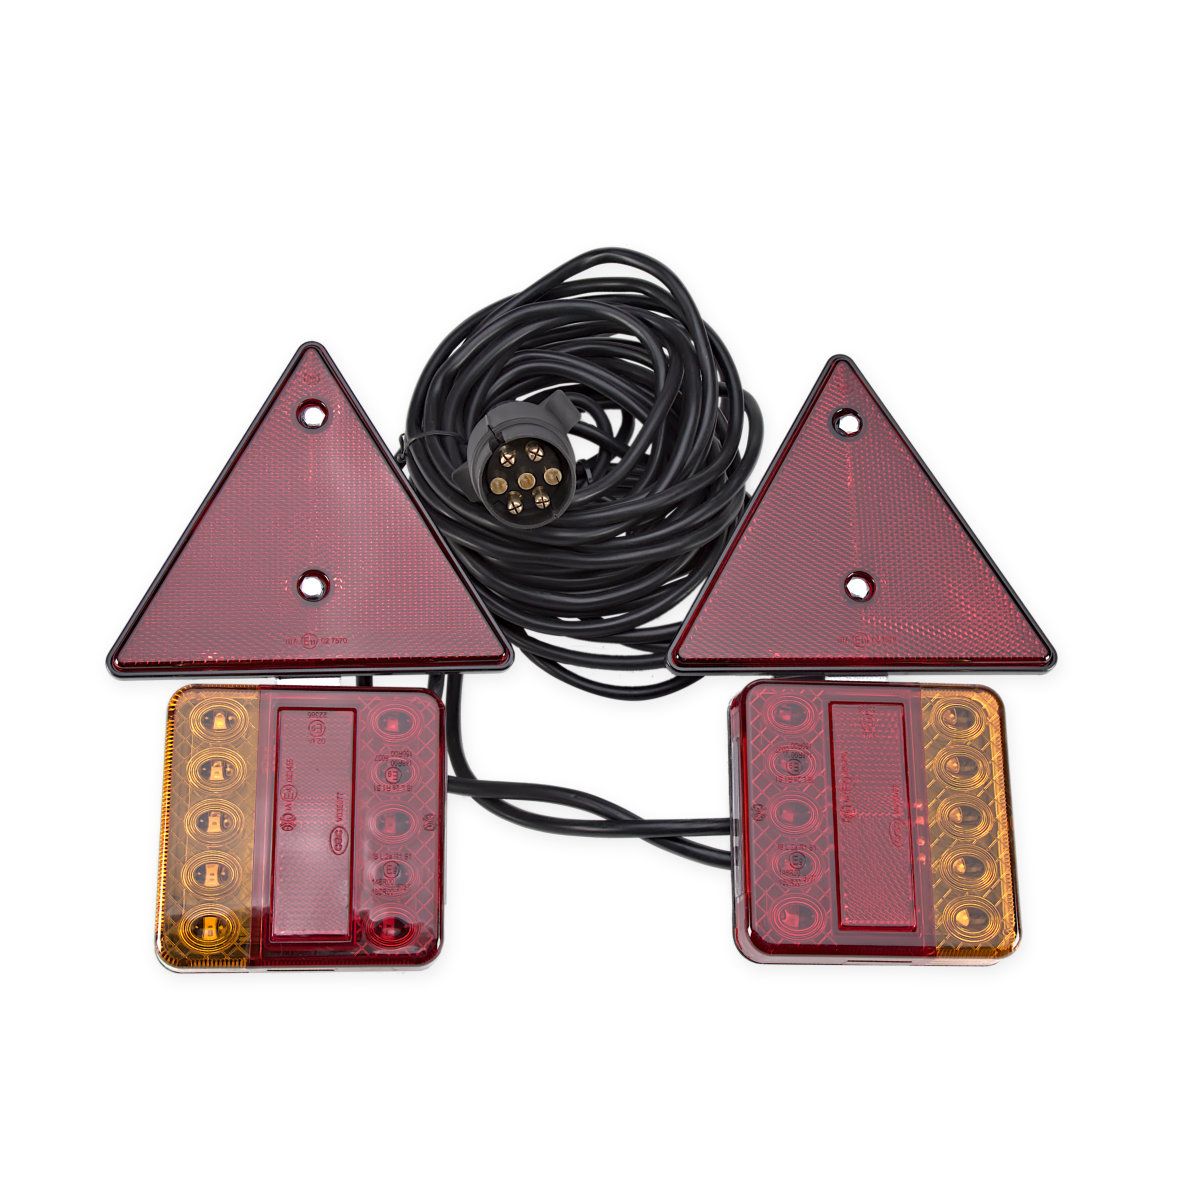 Zestaw lamp LED na magnes kompletny z trójkątami z przewodem 7,5 metra